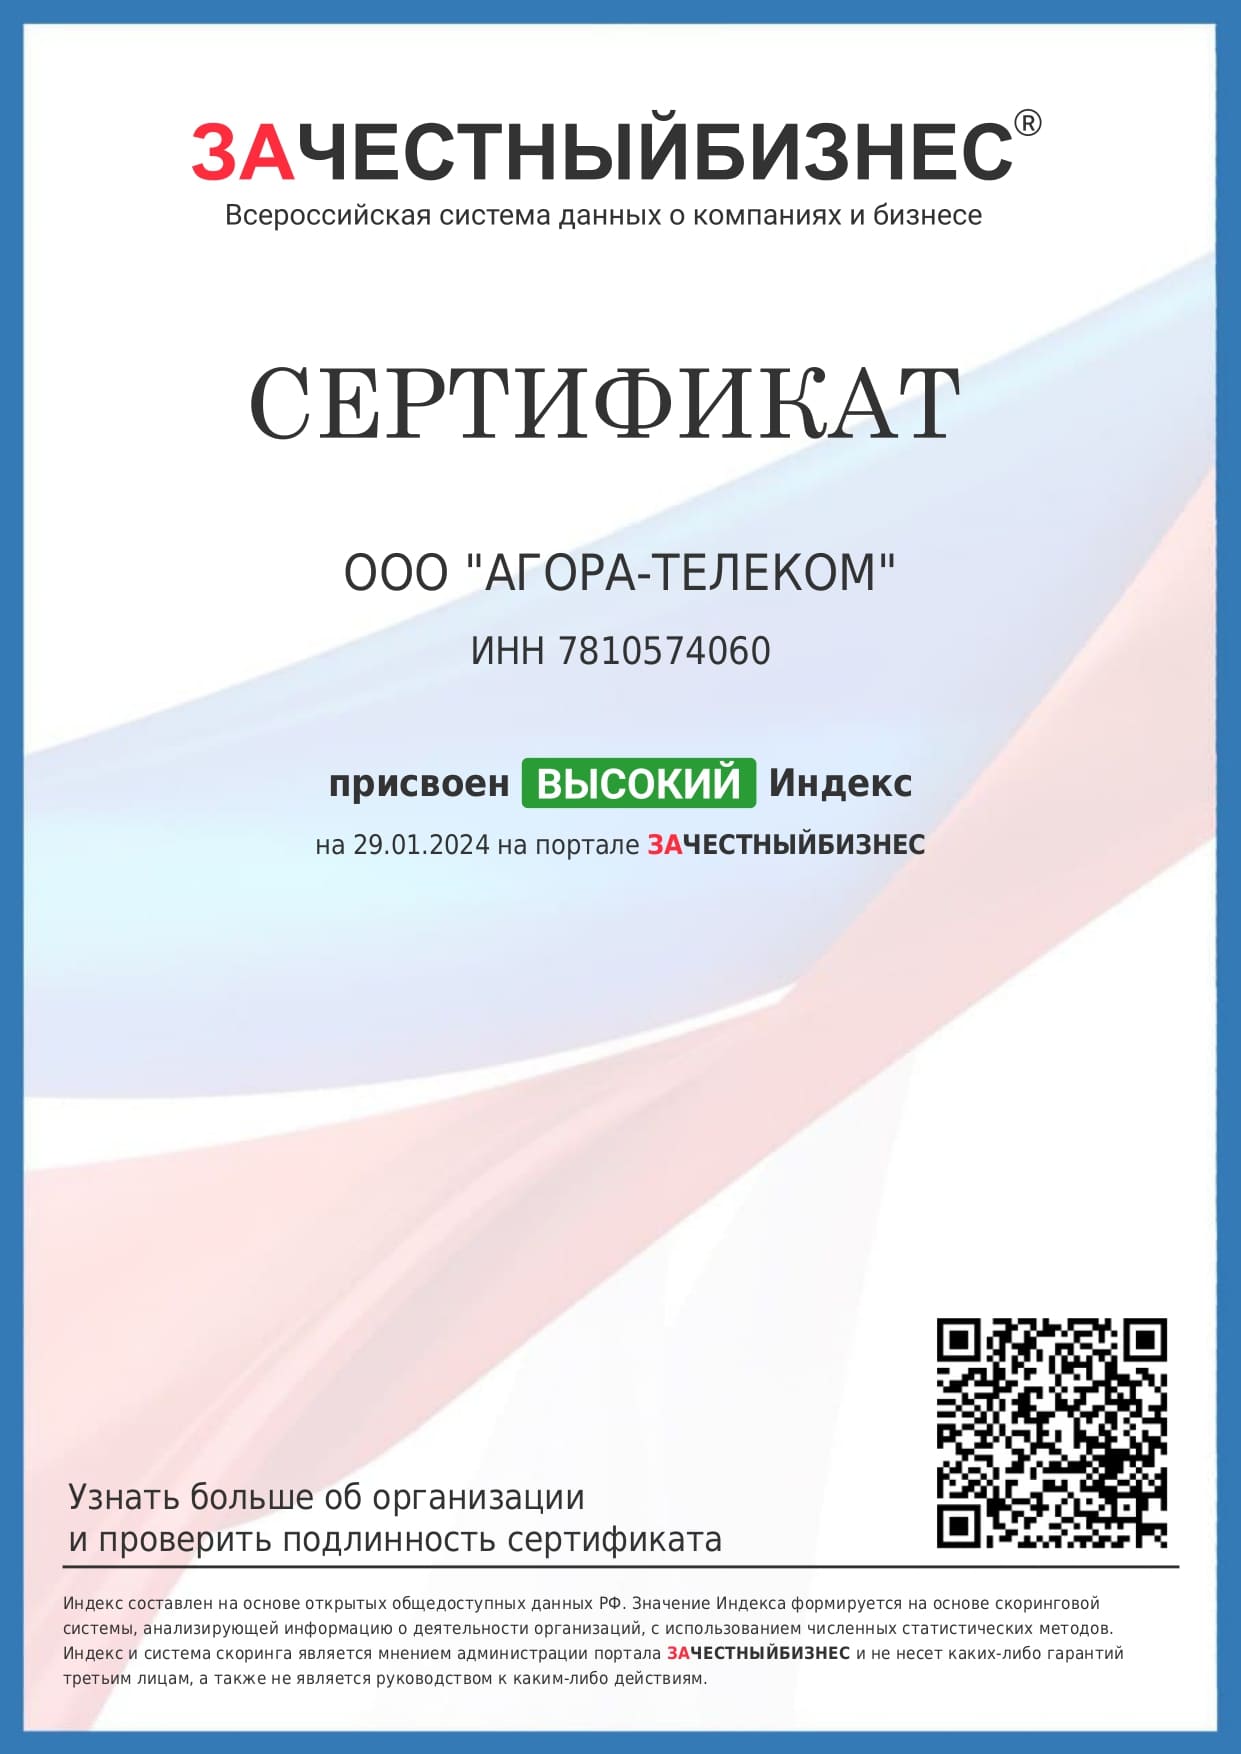 Компания «Агора-Телеком» получила сертификат «За честный бизнес»<